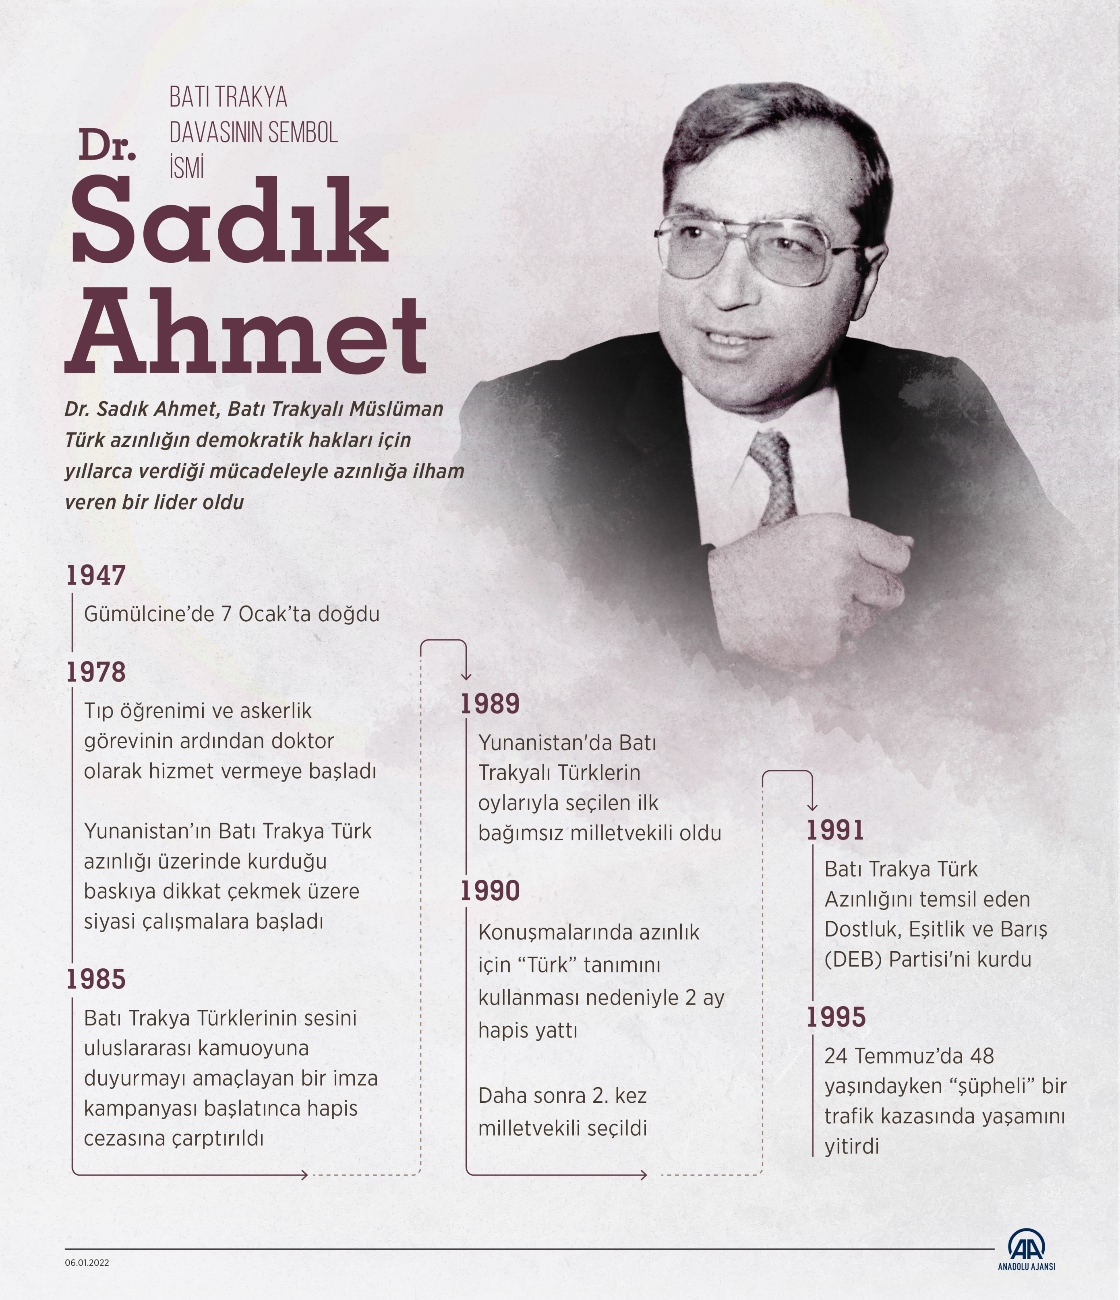 Batı Trakya davasının sembol ismi Dr. Sadık Ahmet